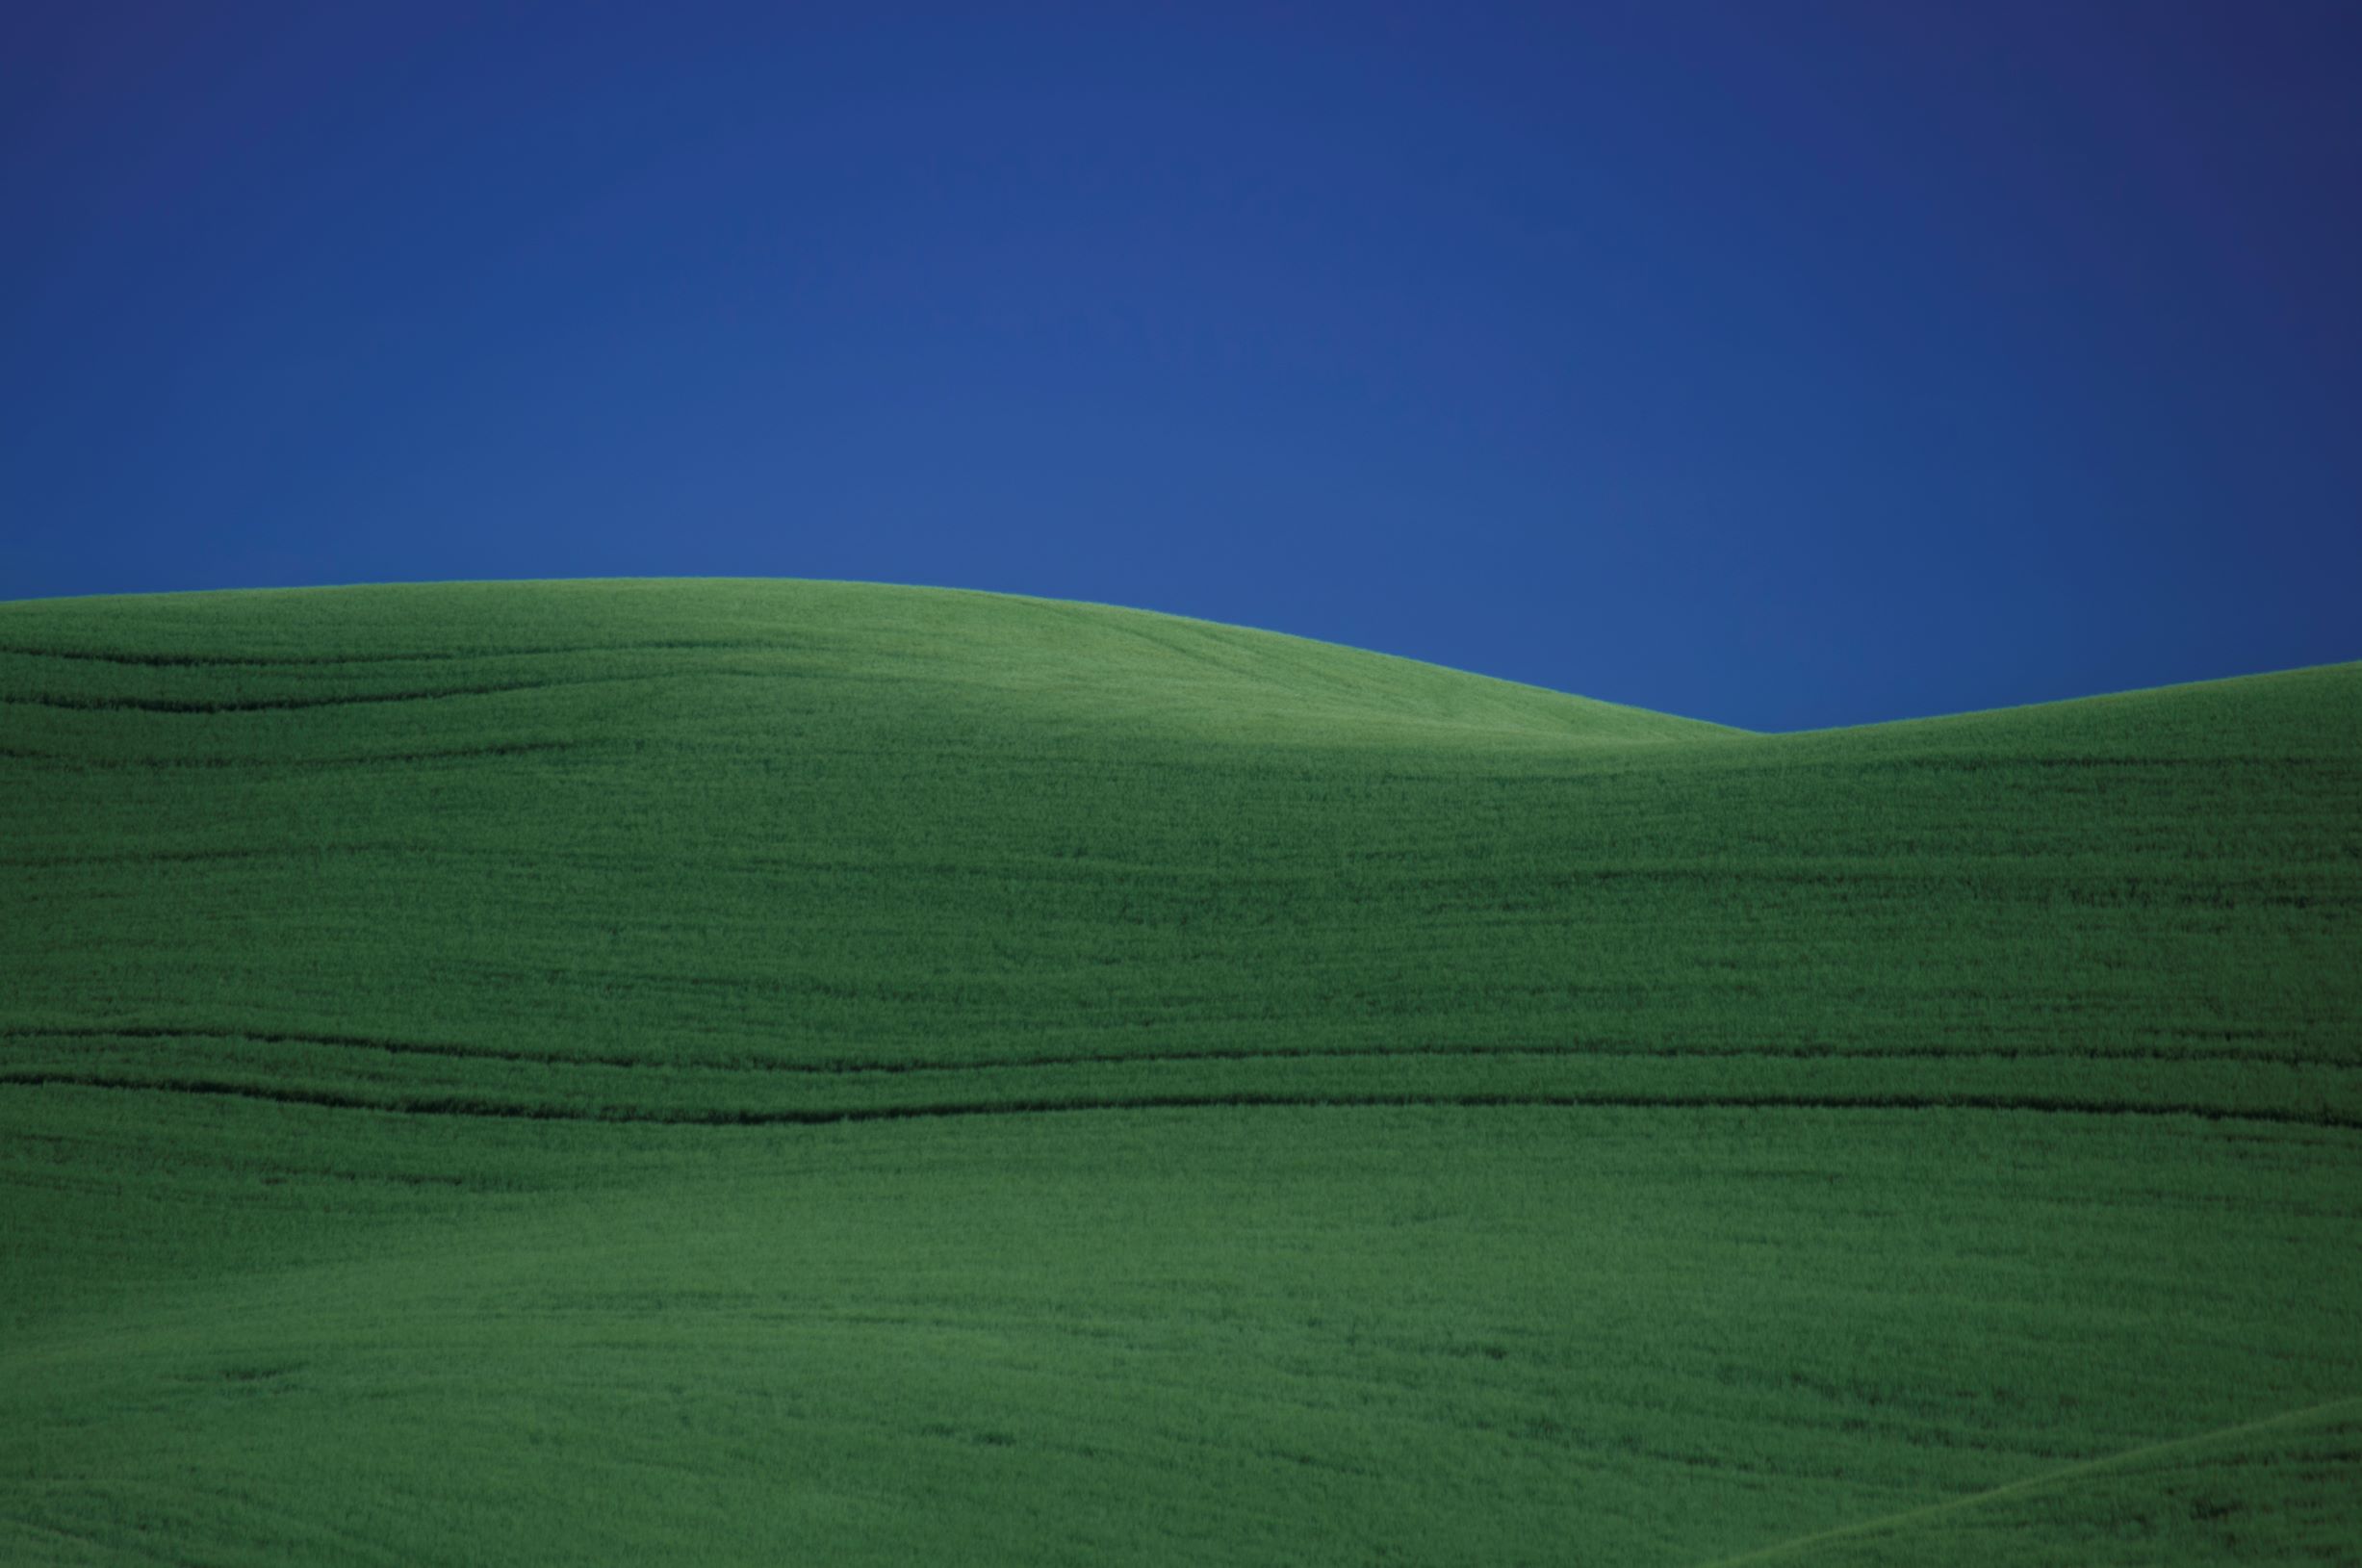 Wheat Field Abstract - Photograph by David Modzelewski